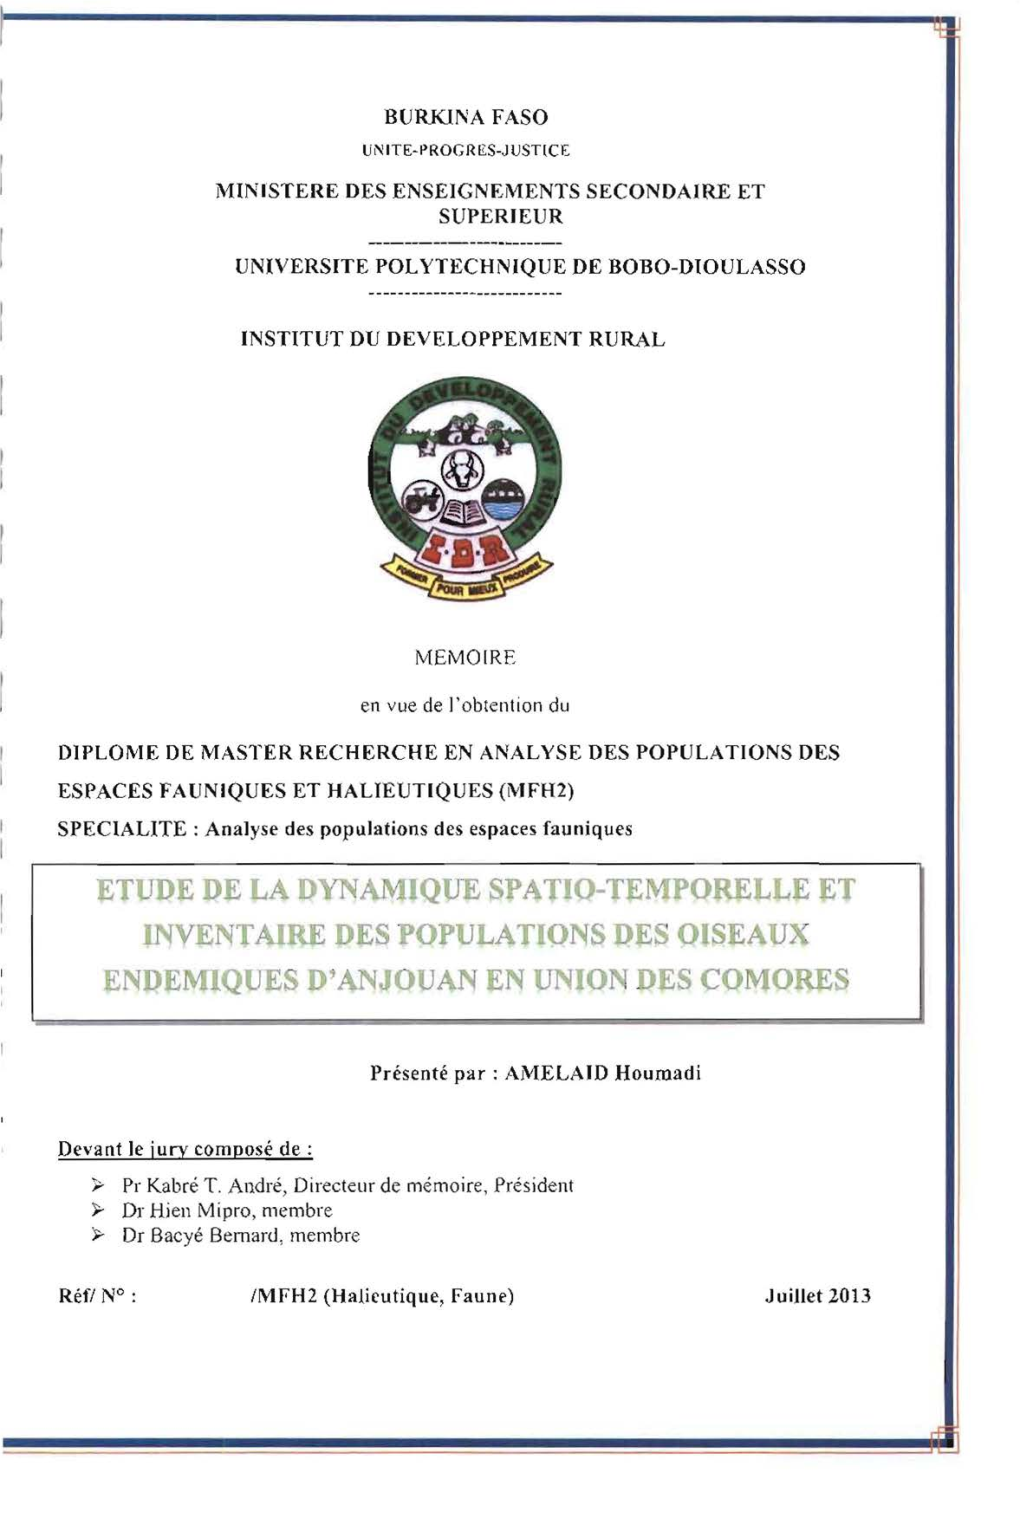 Etude De La Dynamique Spatio-Temporelle Et Inventaire De Populations Des Oiseaux Endémiques D'anjoua En Union Des Comores